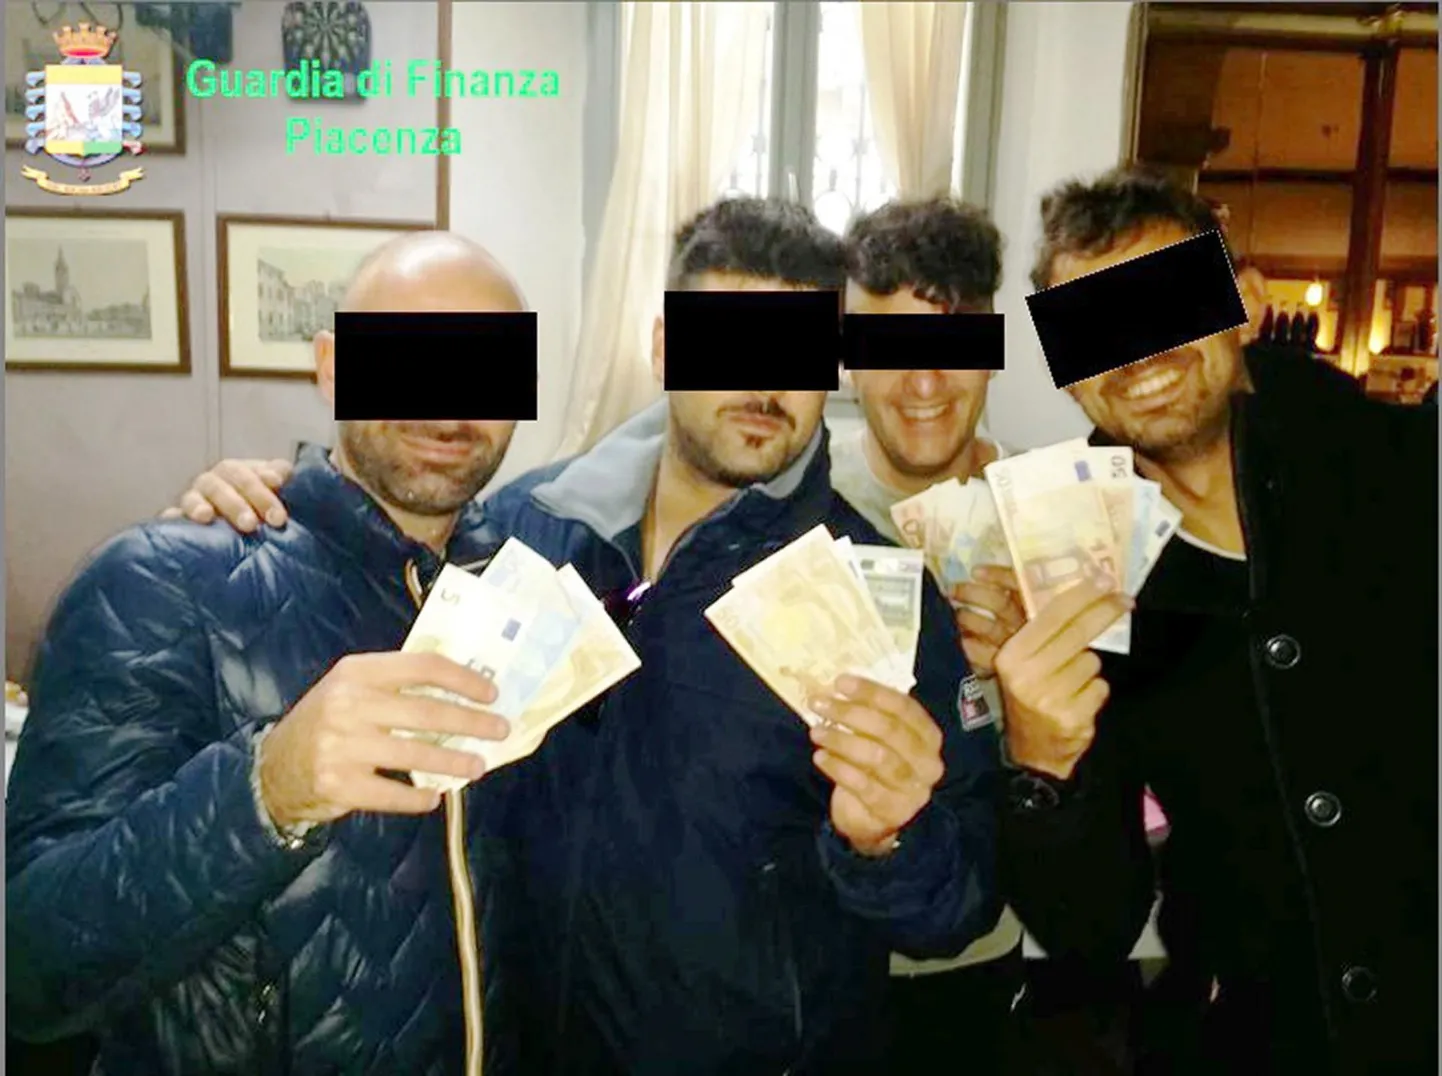 Kahtlusalused politseinikud tegid muuseas pilti, kus kelkisid näpus olevate rahatähtedega. 